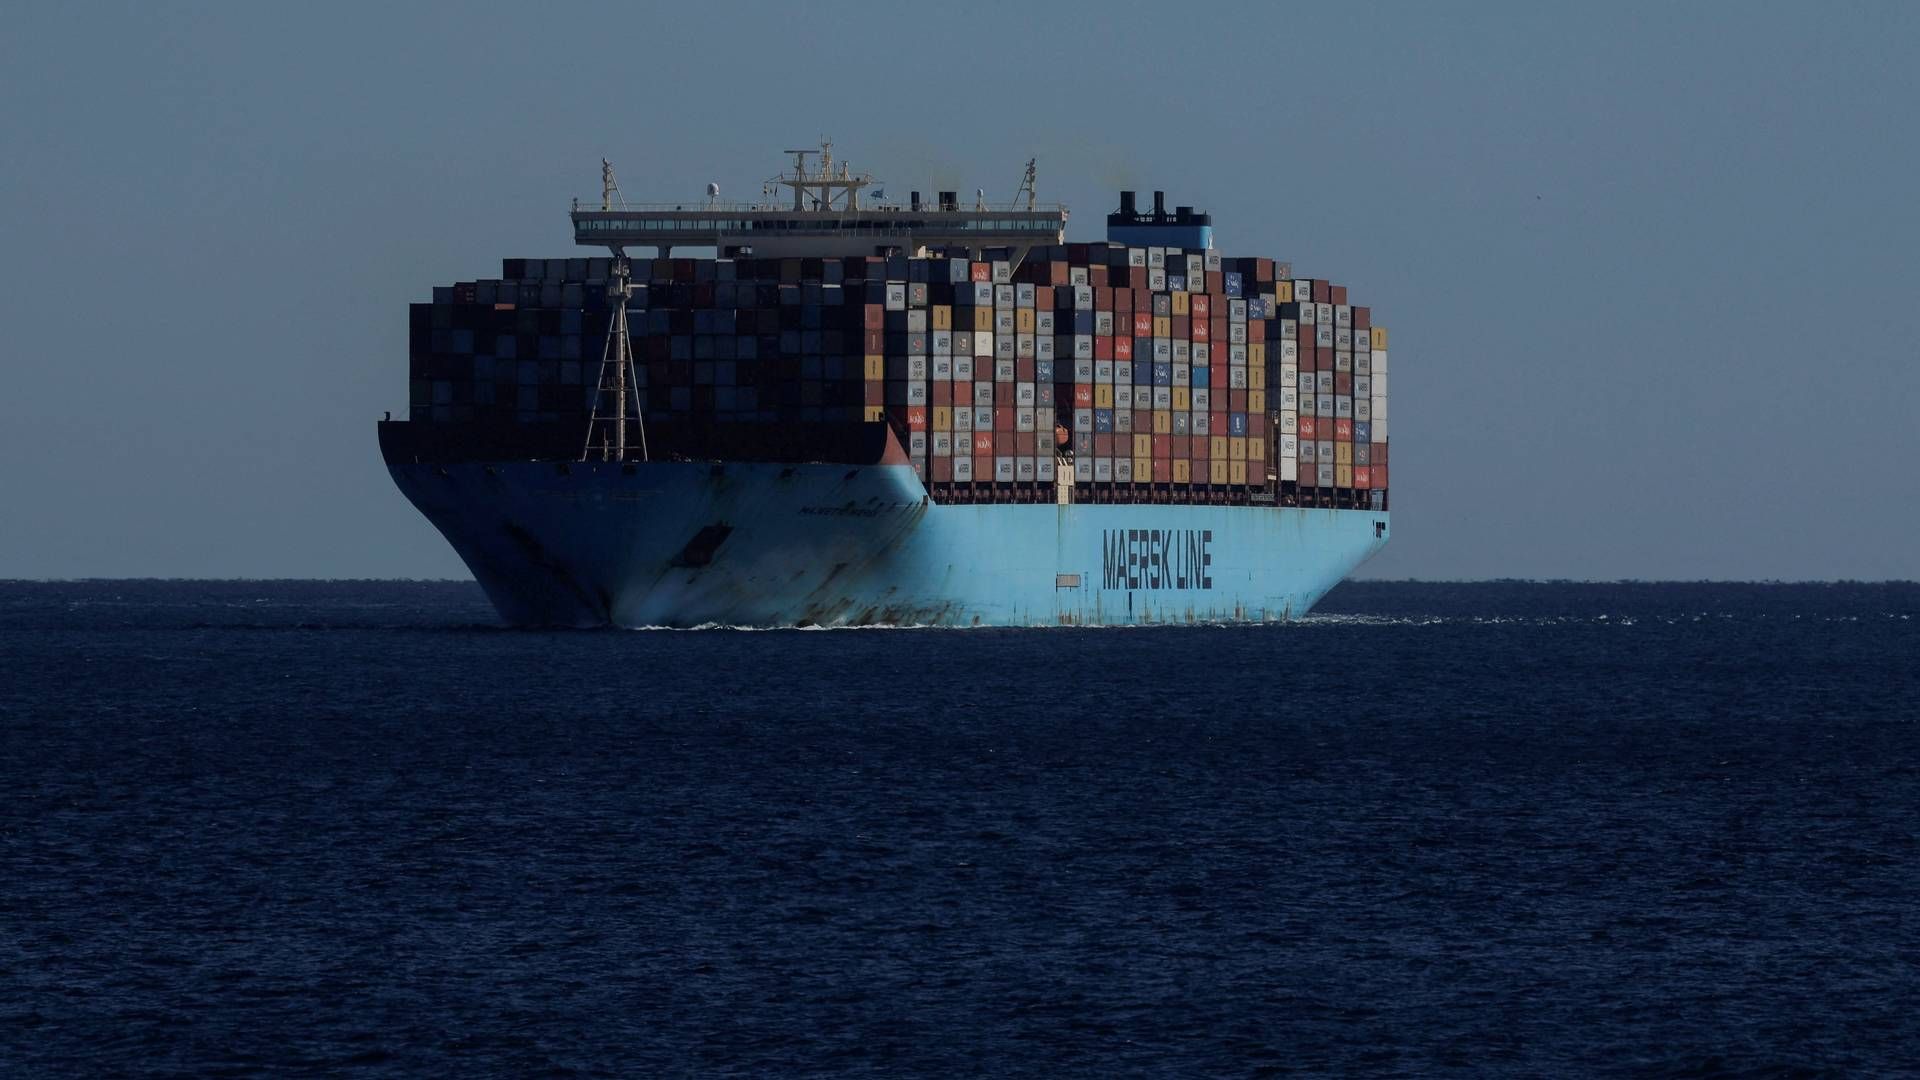 ”Maersk er opmærksom på den igangværende hændelse med Maersk Gibraltar, mens skibet var på vej fra Salalah, Oman til Jeddah, Saudi-Arabien. Besætningen og skibet er rapporteret i sikkerhed. På nuværende tidspunkt arbejder vi stadig på at fastslå fakta om hændelsen. Sikkerheden for vores besætning og skib er vores højeste prioritet, og vi tager alle mulige sikkerhedsforanstaltninger for at sikre, at de ikke kommer i fare,” skriver en talsperson fra Mærsk til ShippingWatch. | Foto: Jon Nazca/Reuters/Ritzau Scanpix